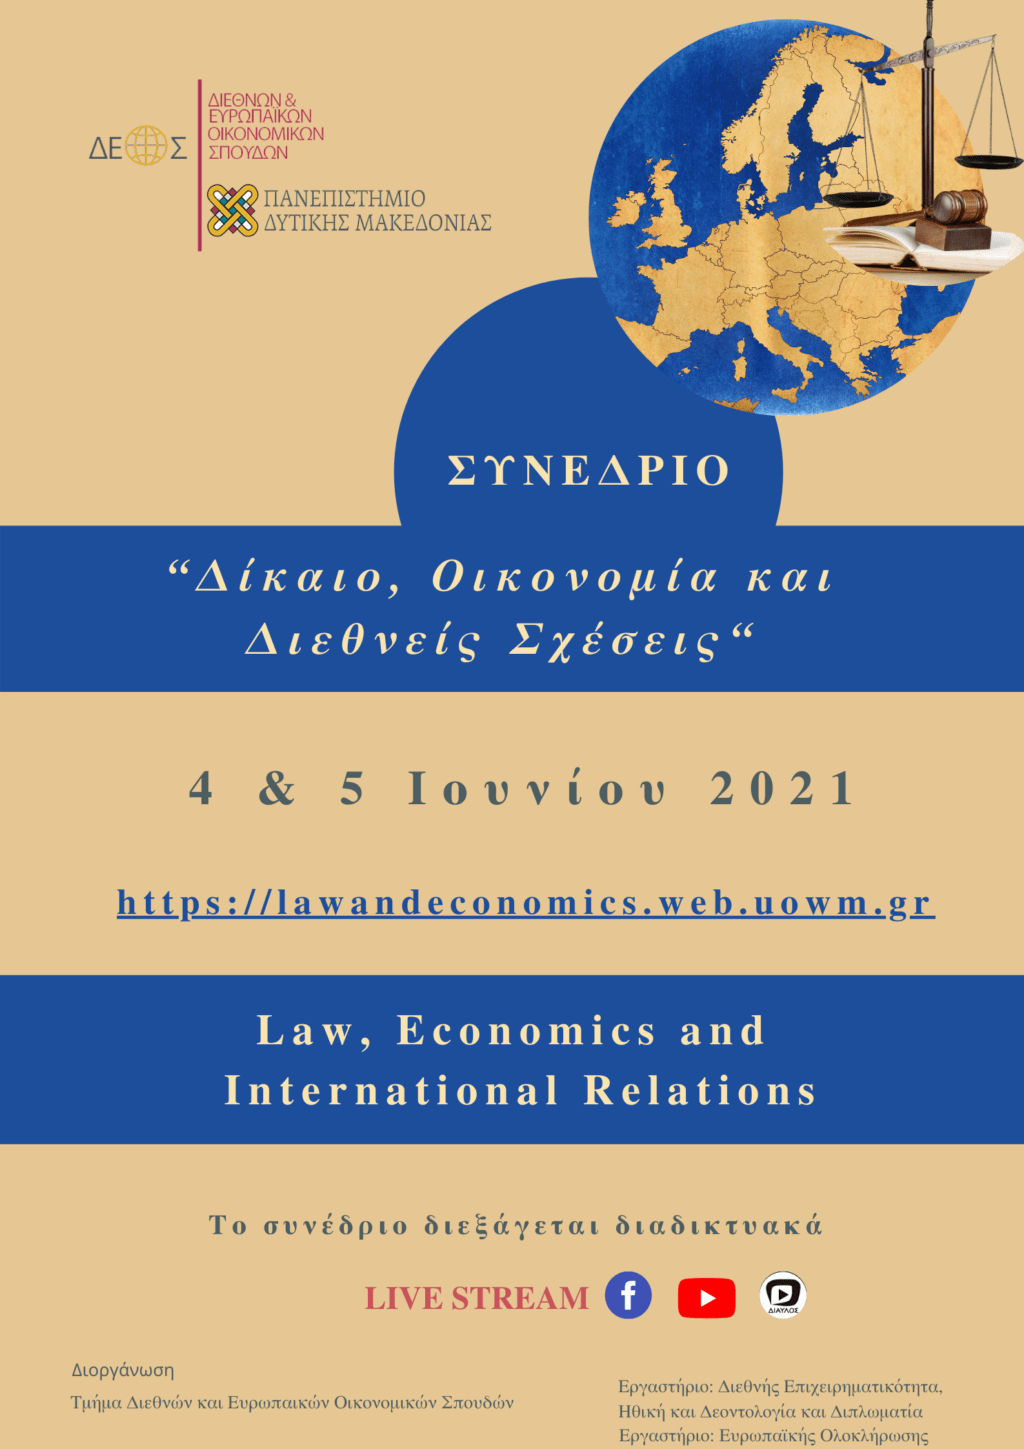 Τμήμα Διεθνών και Ευρωπαϊκών Σπουδών Πανεπιστημίου Δυτικής Μακεδονίας | 1Ο Πανελλήνιο Συνέδριο με θέμα «Δίκαιο, Οικονομία και Διεθνείς Σχέσεις».